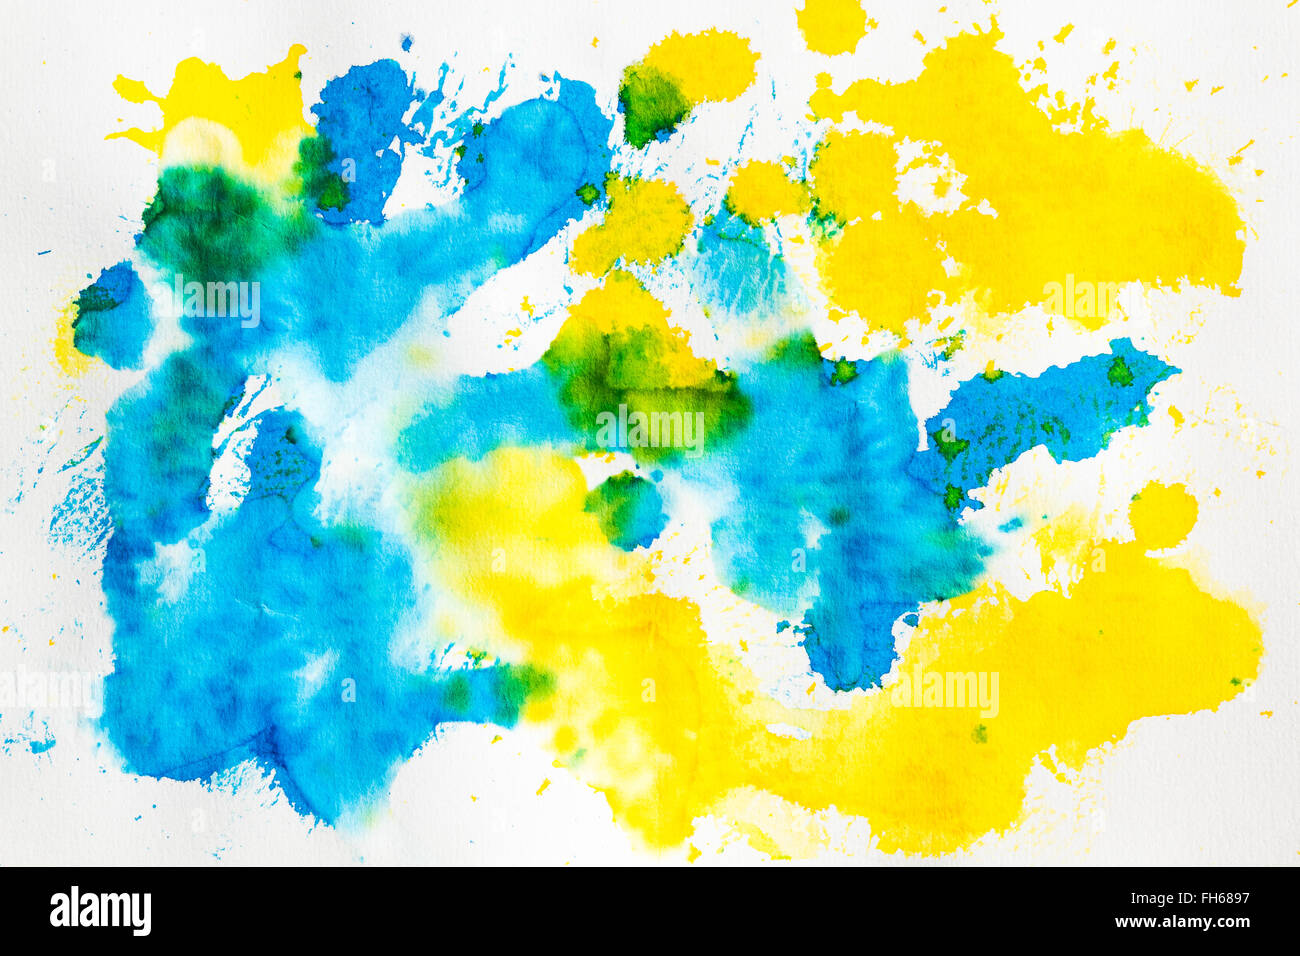 Aquarell blau gelb mix Zusammenfassung Hintergrund. Auf weissem grobkörniges Papier gemalt. Zu Verwenden wie eine Textur oder Design Element. Stockfoto